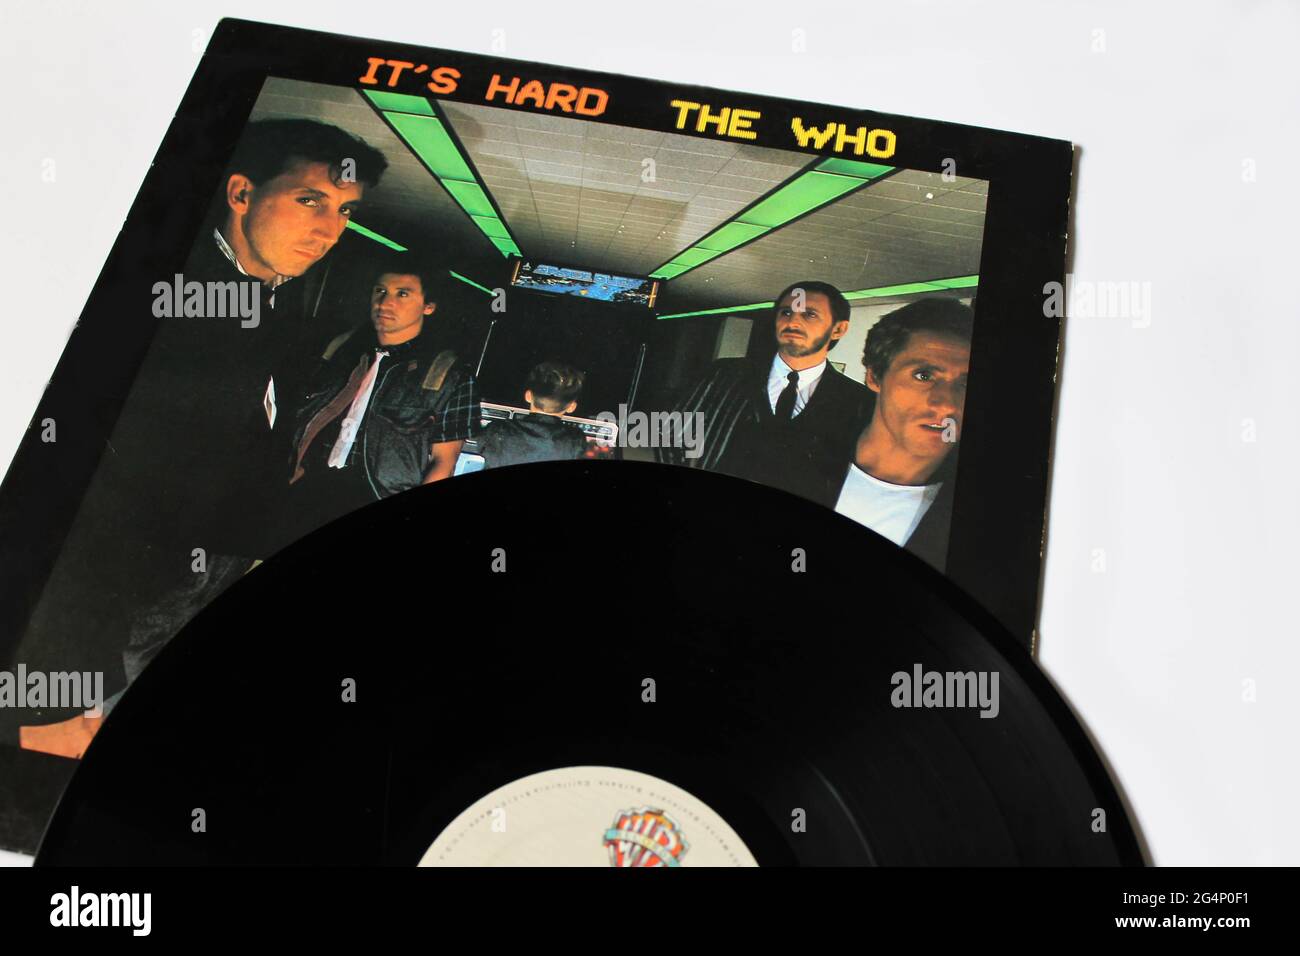 Rock- und Hard-Rock-Band, das Who-Musikalbum auf Vinyl-Schallplatte. Titel: Es ist ein hartes Album-Cover Stockfoto